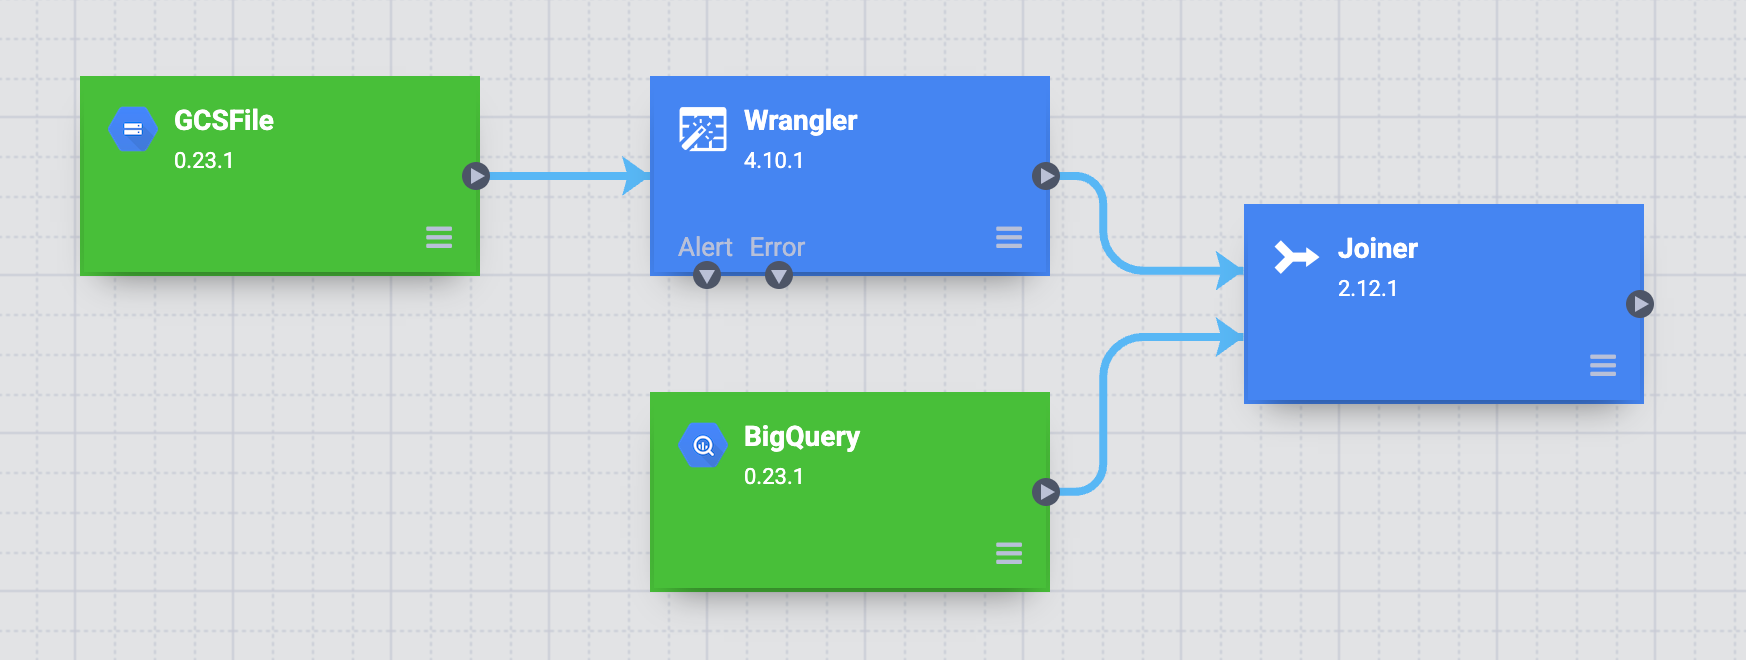 Wrangler ノードと BigQuery ノードを Joiner ノードに結合します。